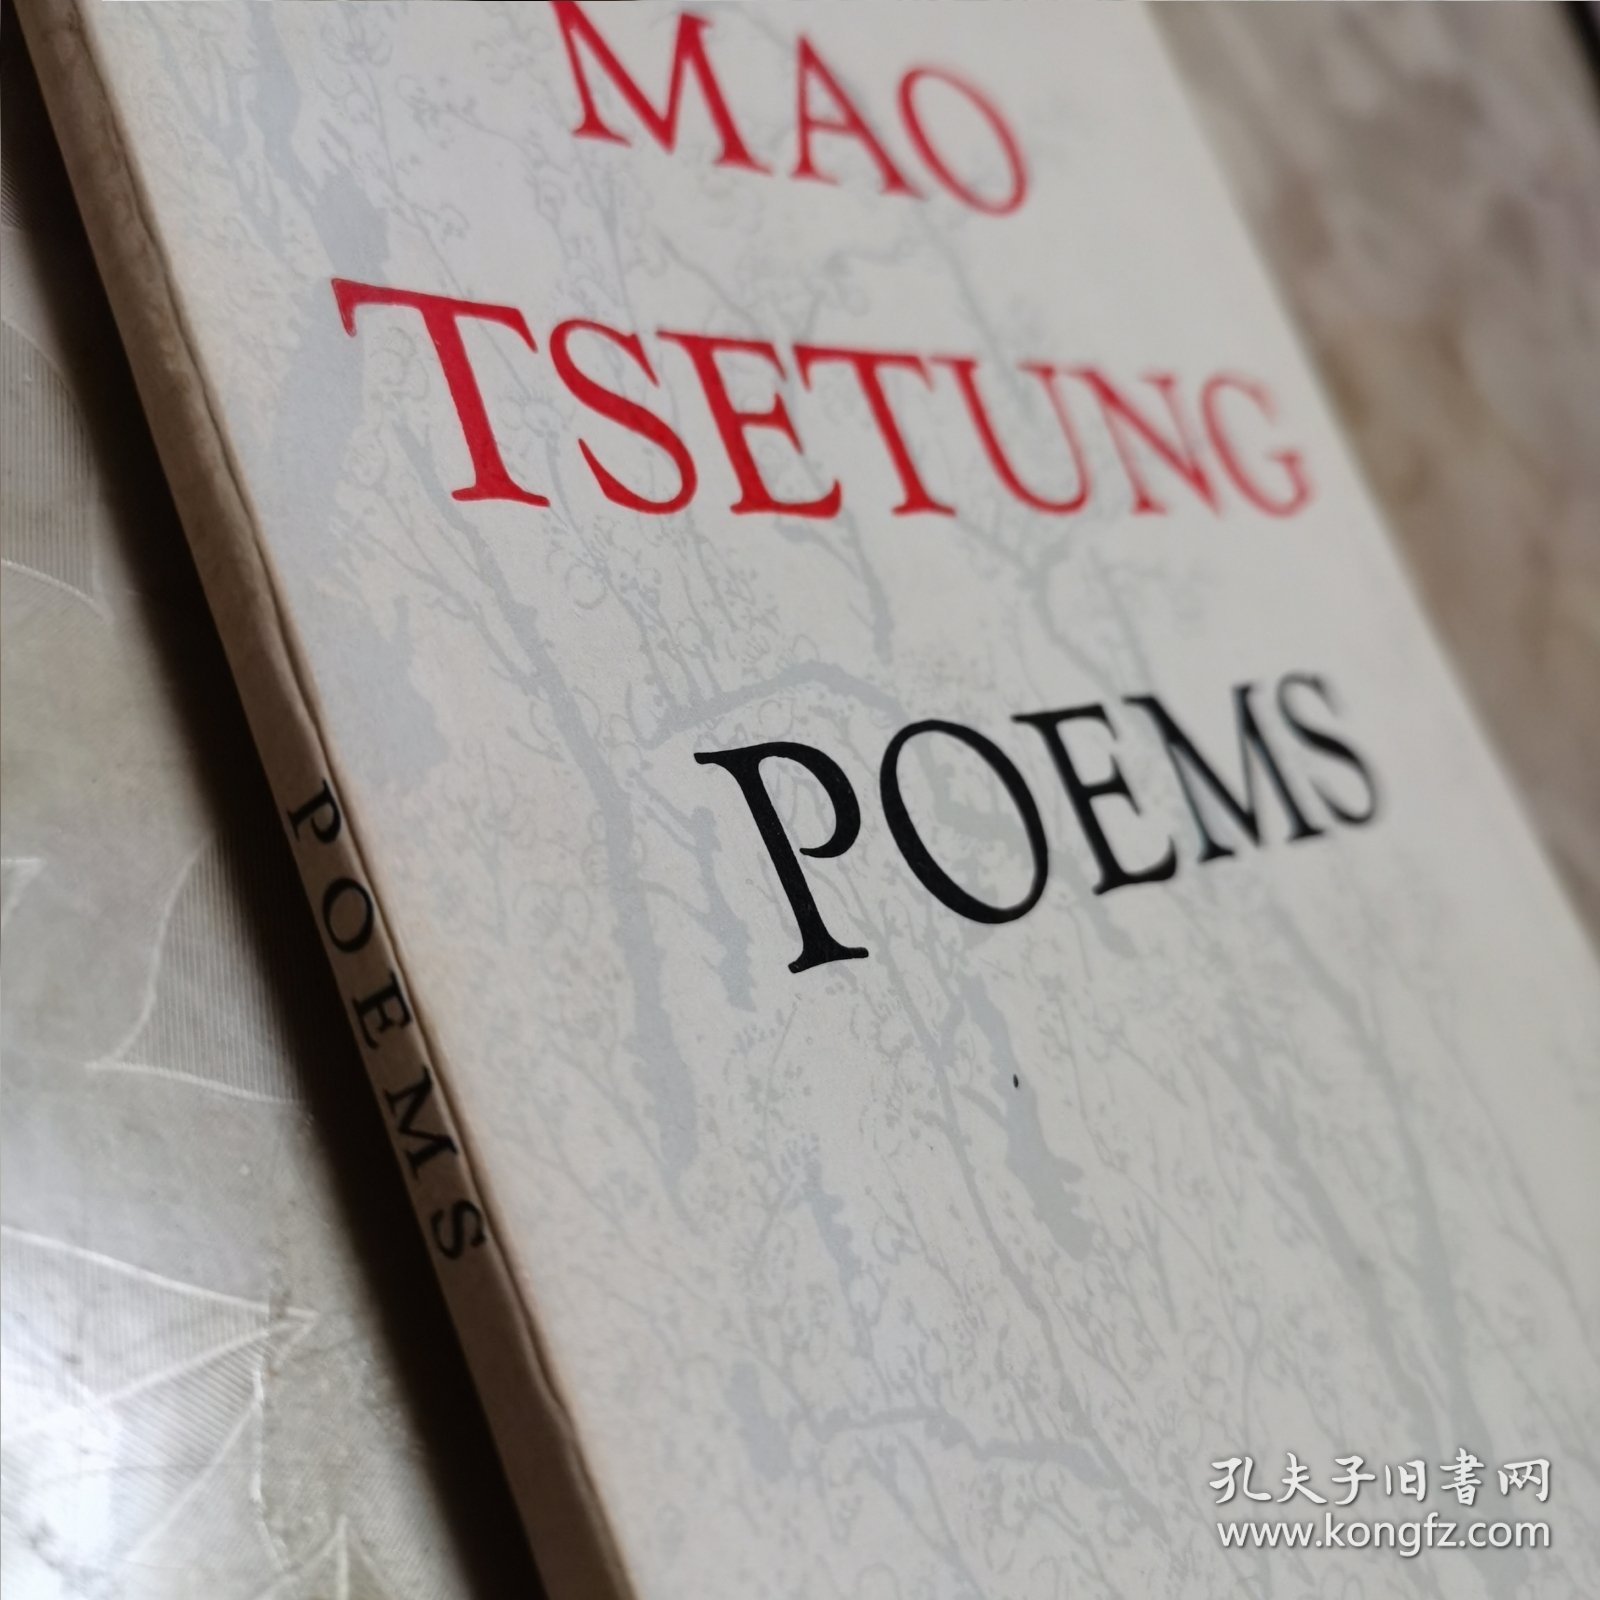 MAO TSETUNG POEMS(英文版《毛泽东诗词》,1976年第1版,50开本)